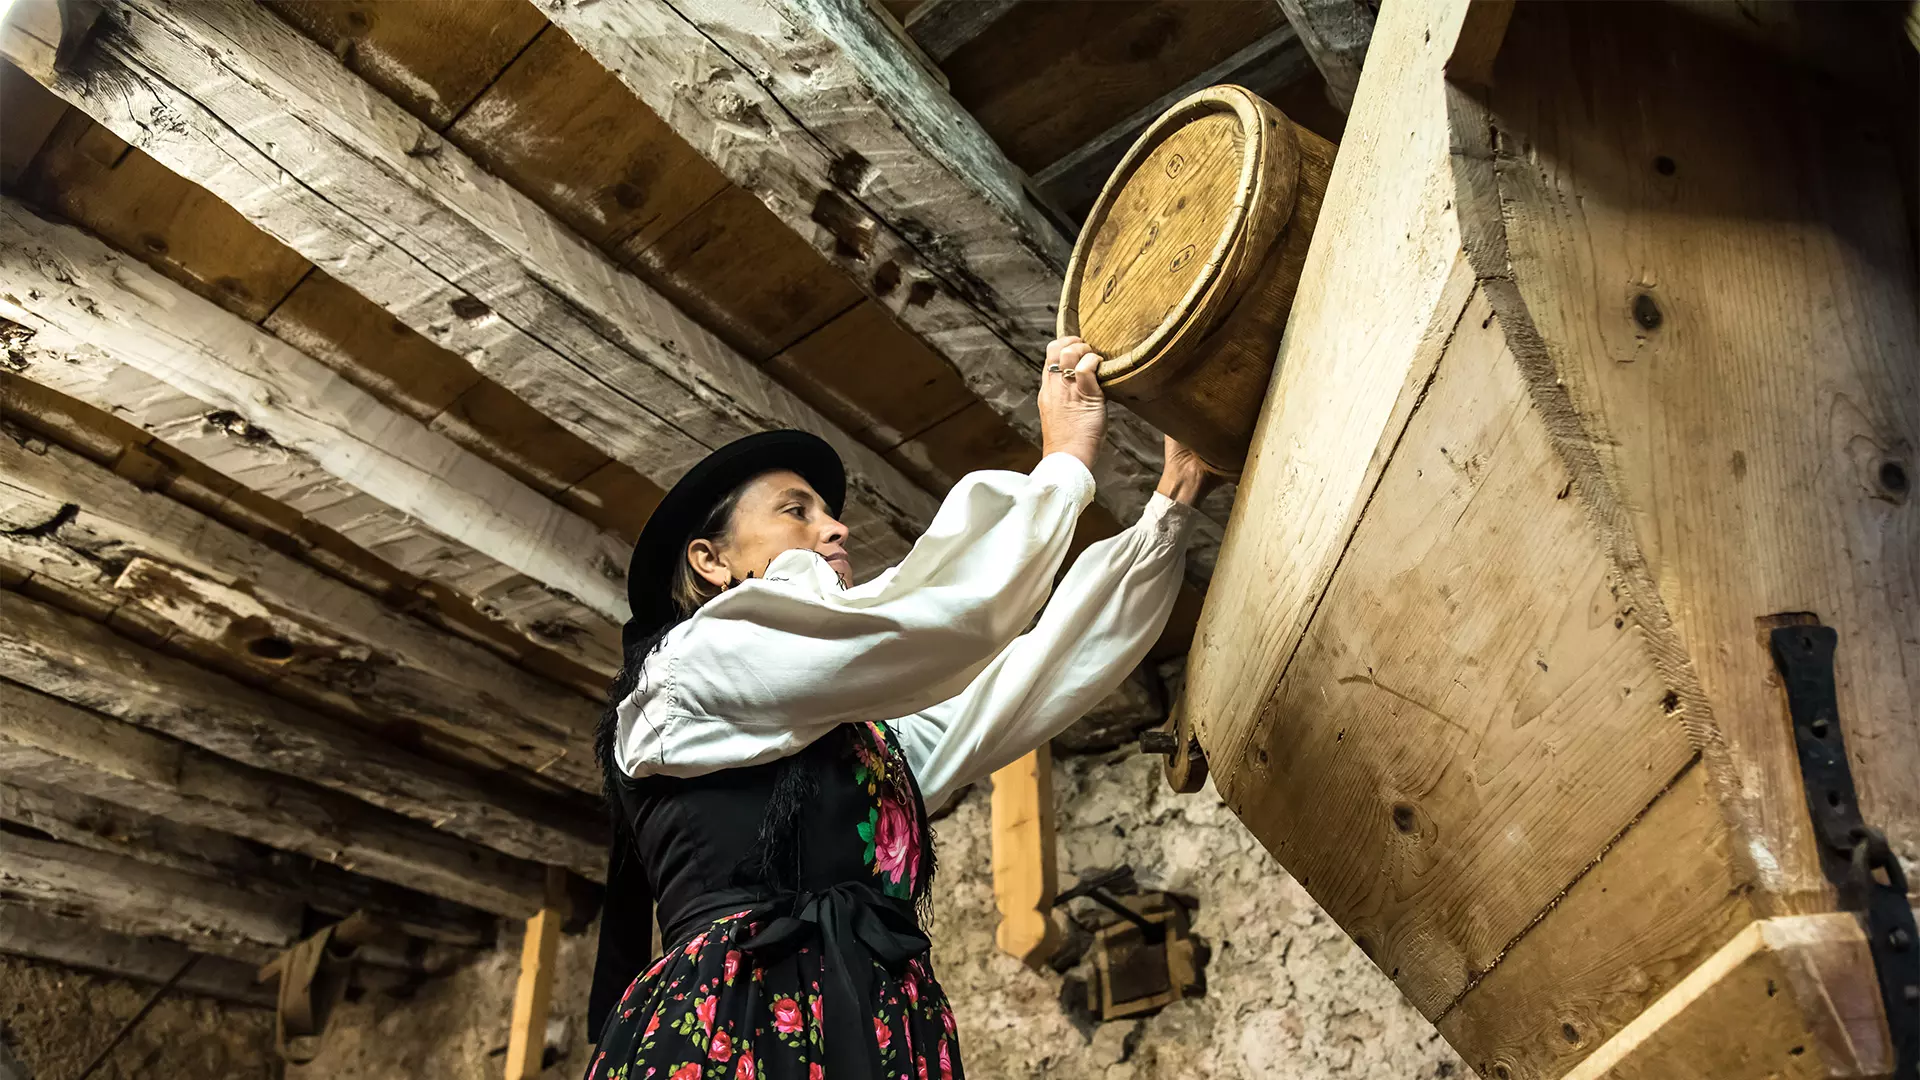 Donna in abiti tradizionali all'interno dell'antico mulino di Toffol, Val Fiorentina, Dolomitii (BL), Veneto, Italy